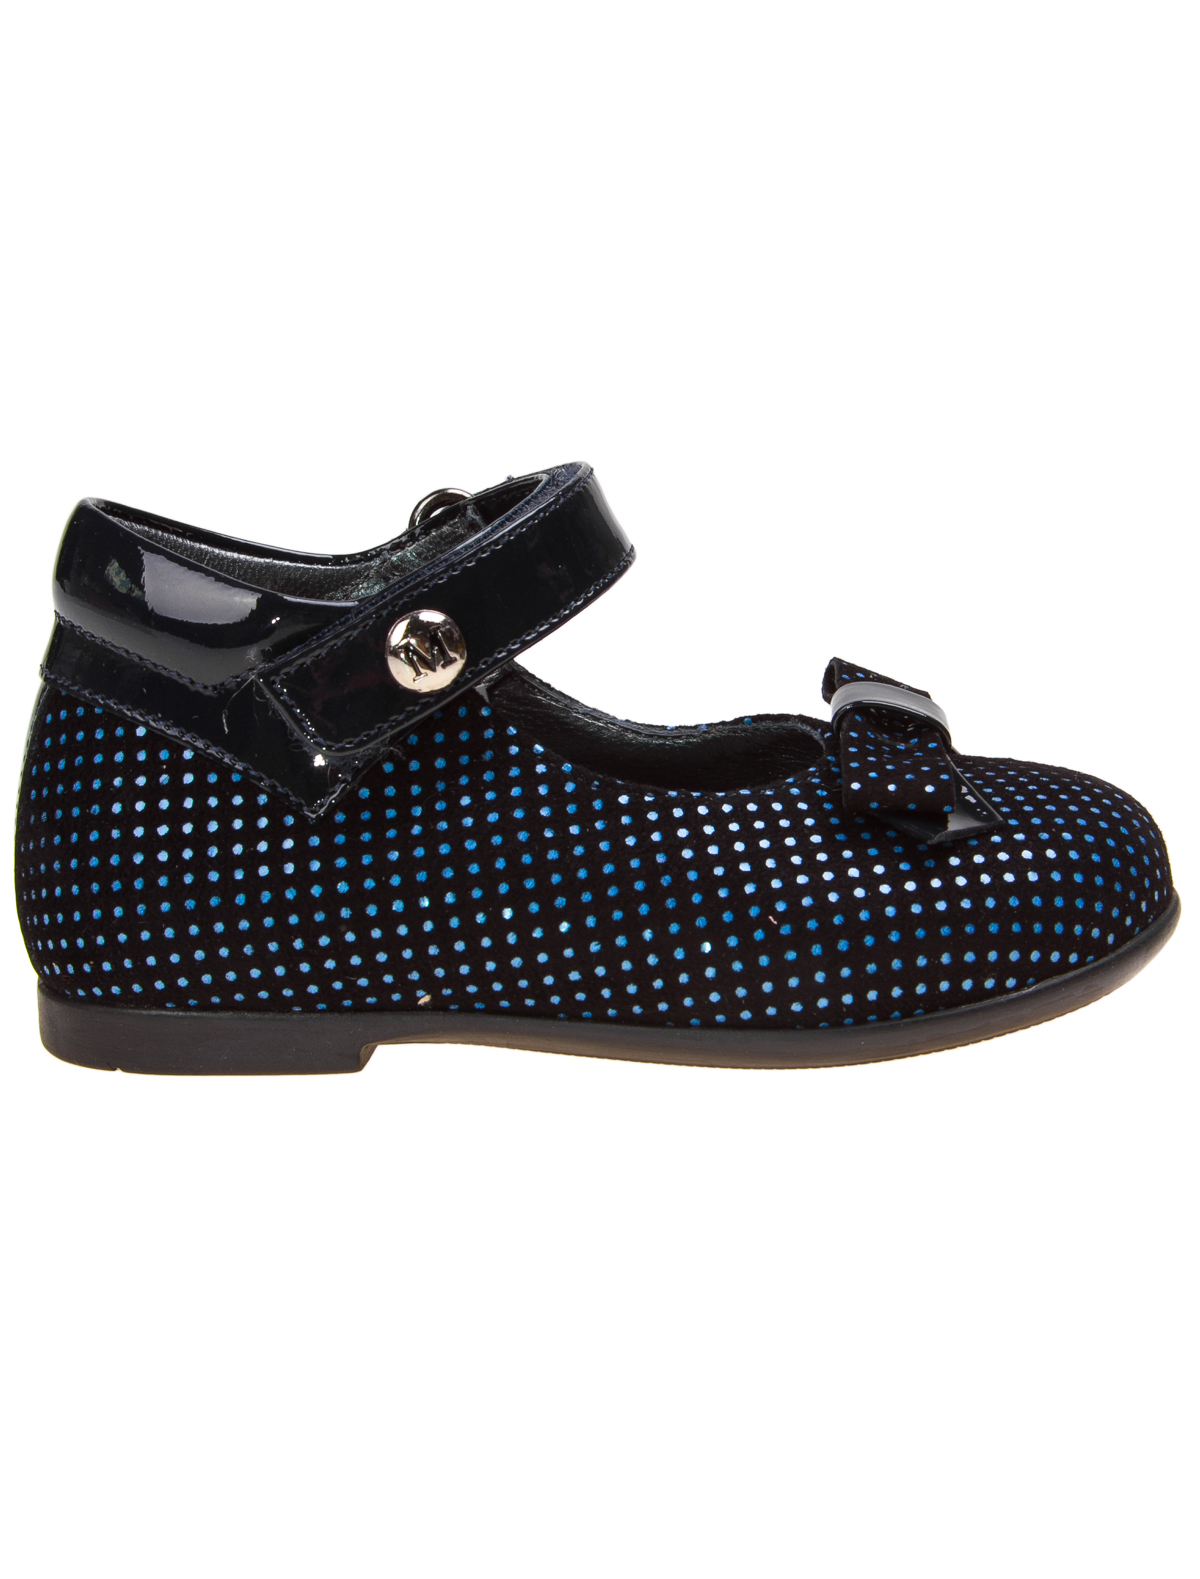 Туфли Missouri 1914287, цвет черный, размер 24 2013709780027 - фото 2